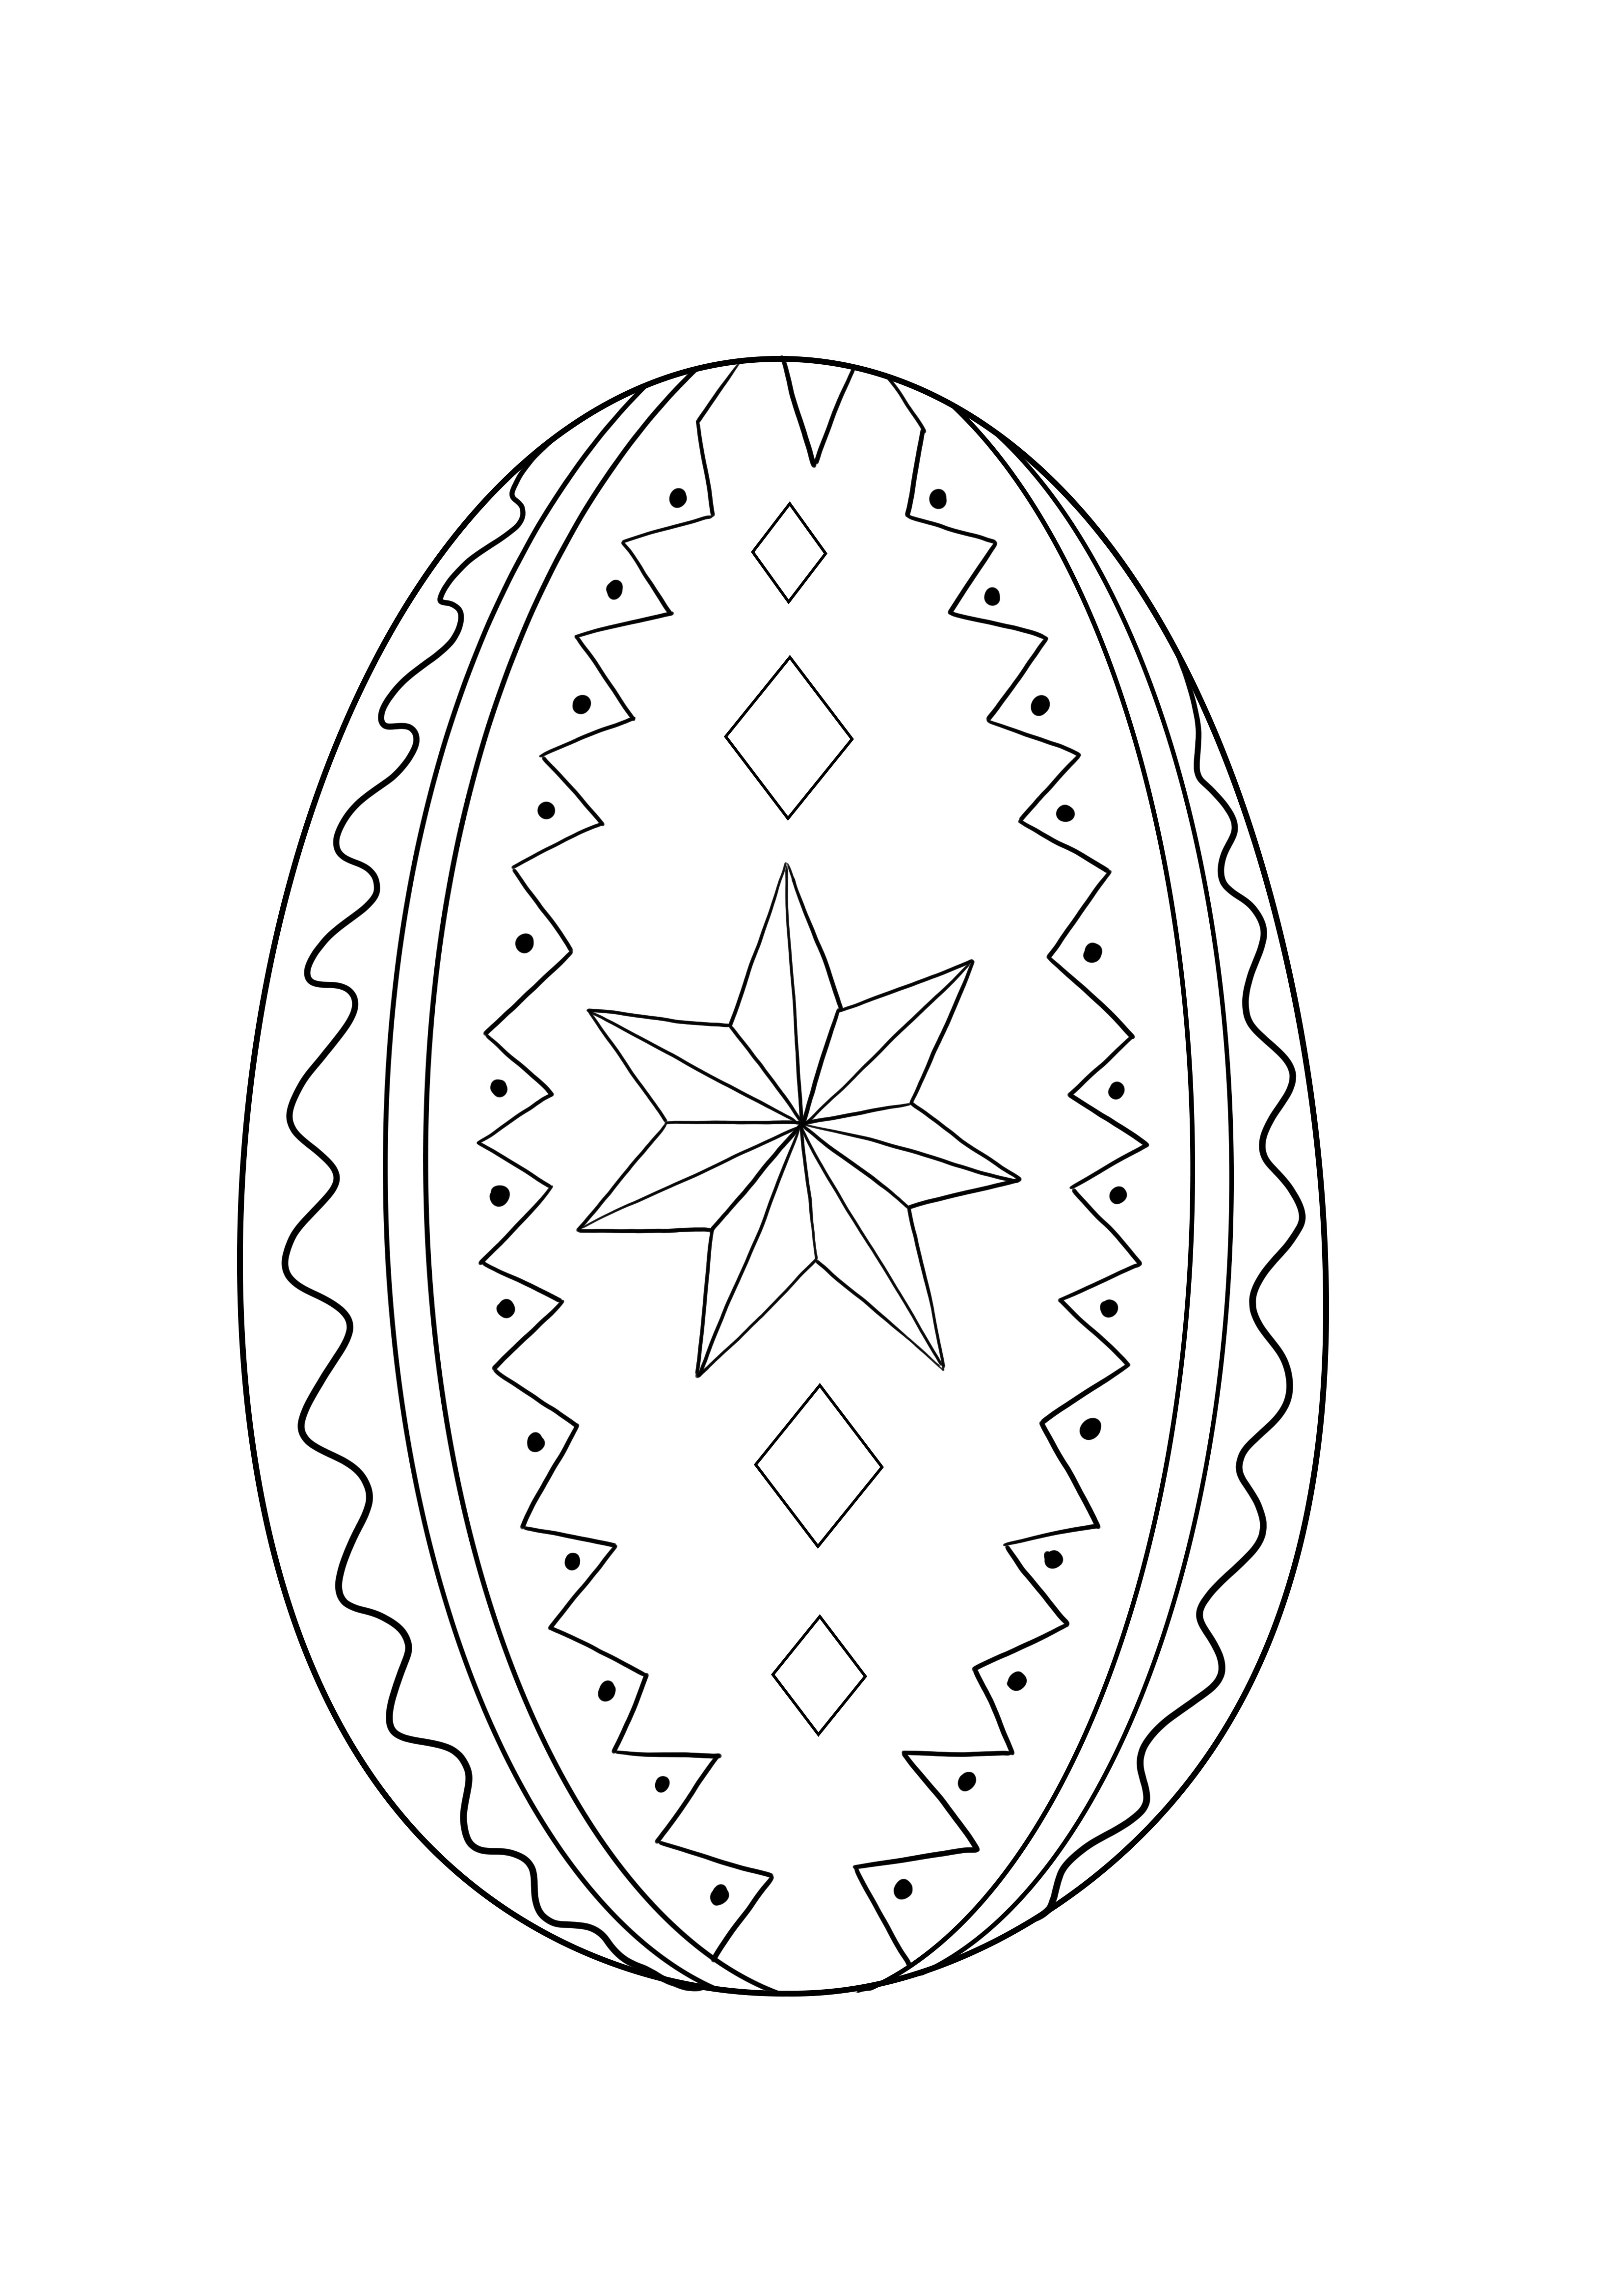 Húsvéti díszítésű tojáskép nyomtatás nélkül és színesre